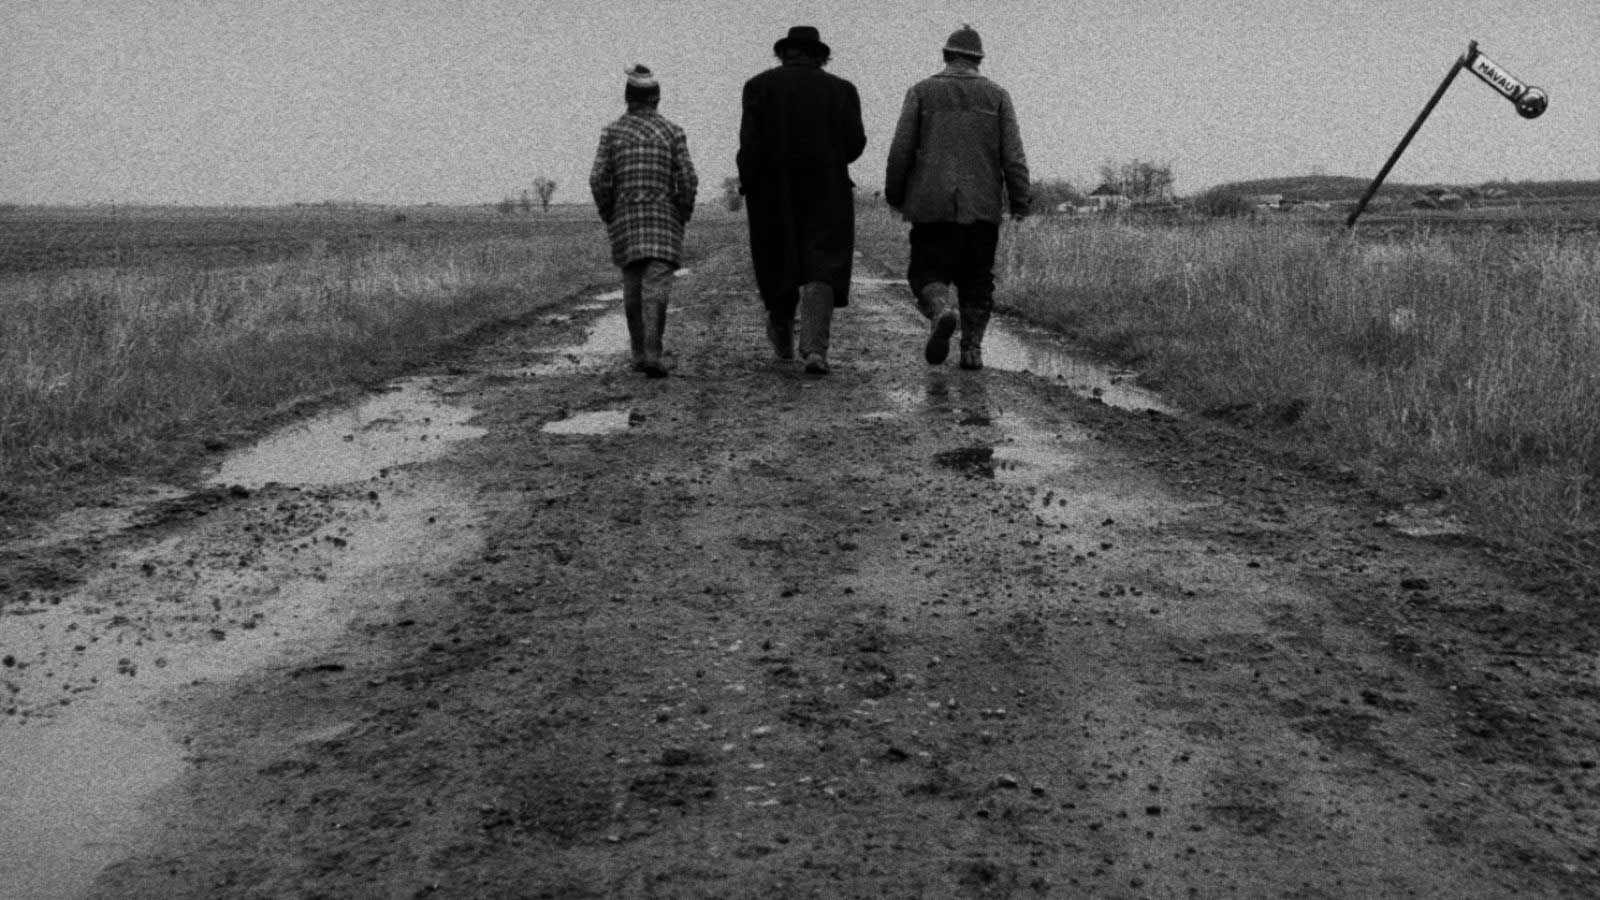 سه نفر در حال قدم زدن در جاده گلی فیلم سیاه و سفید Satantango